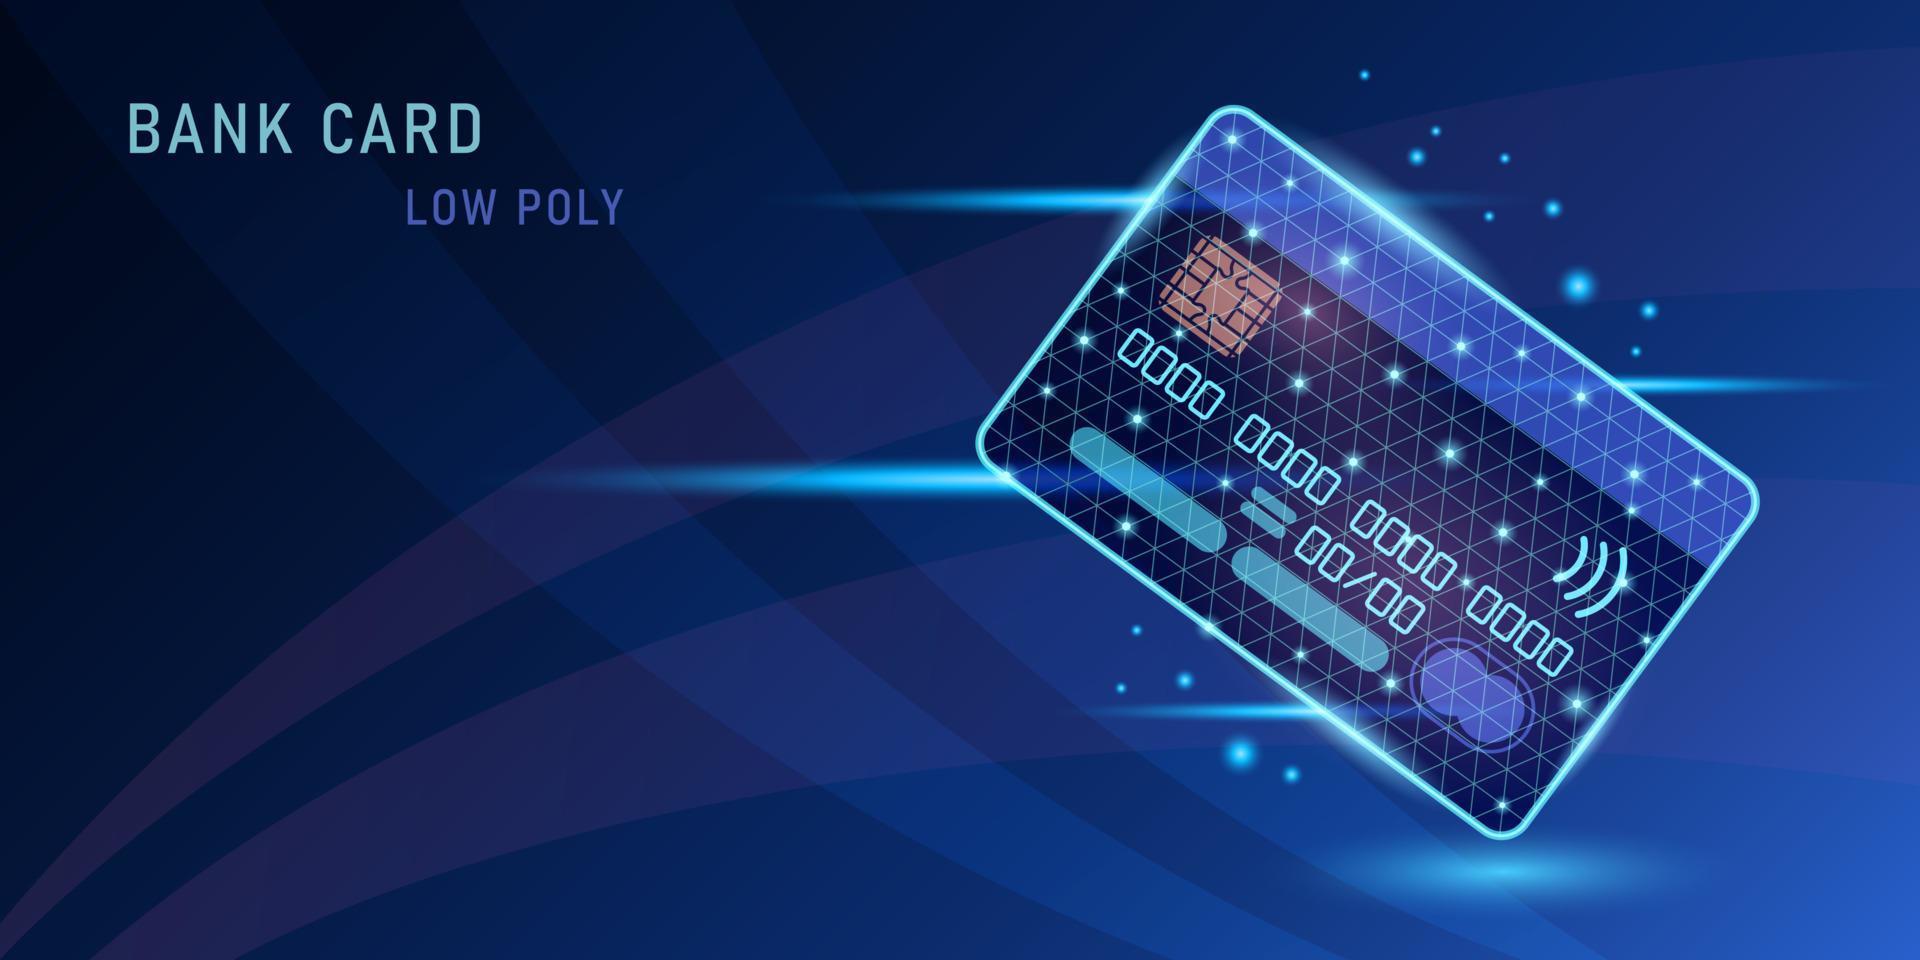 bankkarte low poly mit lichteffekt auf dunkelblauem hintergrund vektor